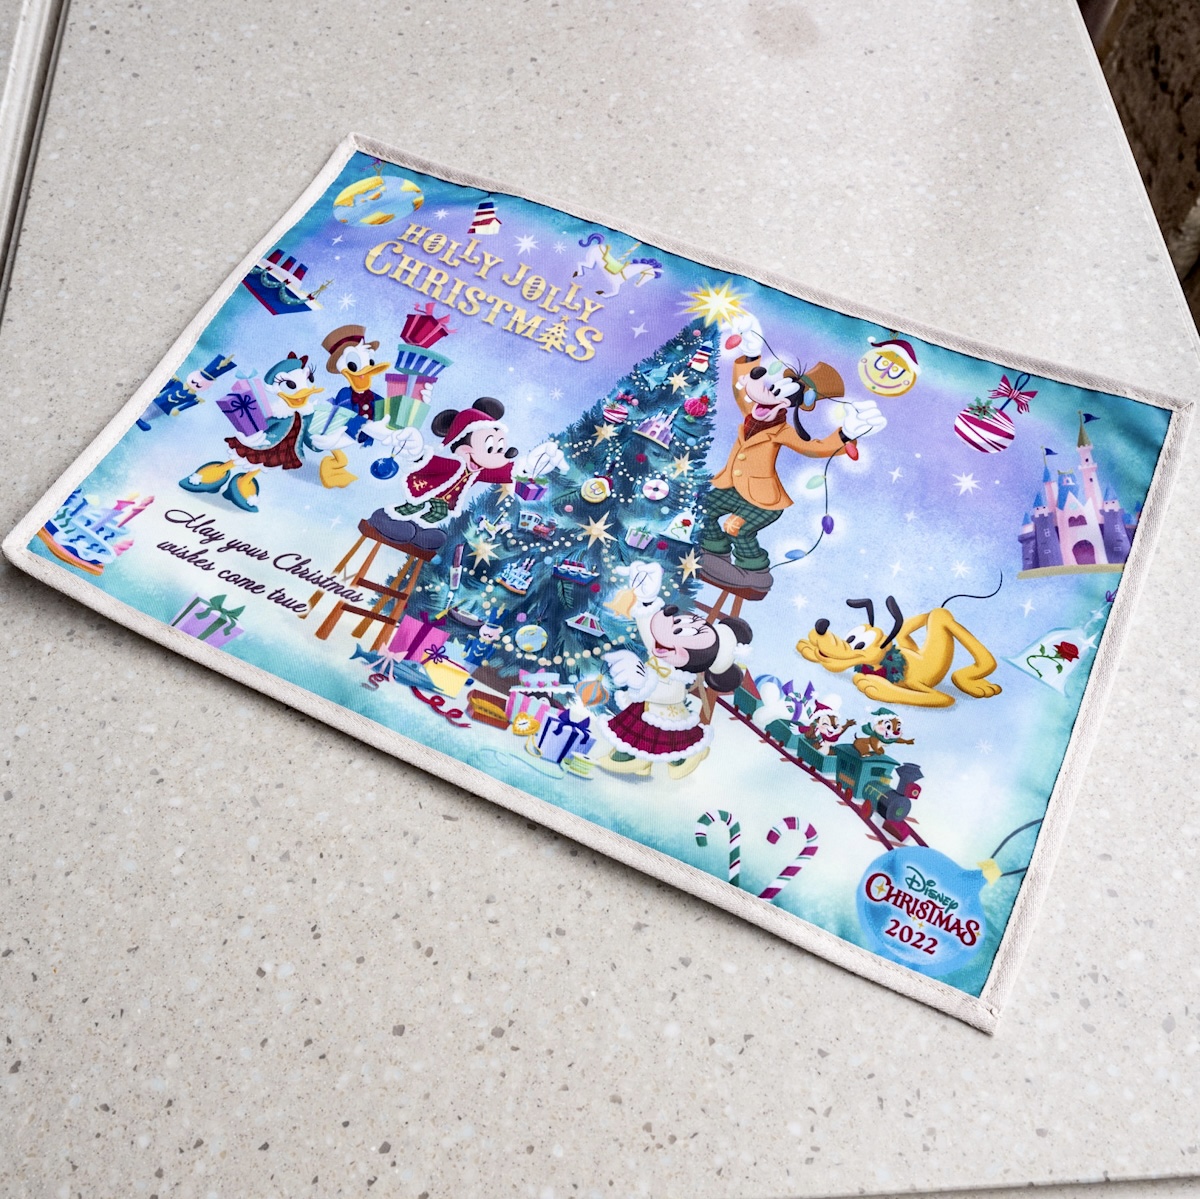 ツリーの飾りつけを楽しむミッキー フレンズデザイン 東京ディズニーリゾート ディズニー クリスマス22 スーベニアランチョンマット